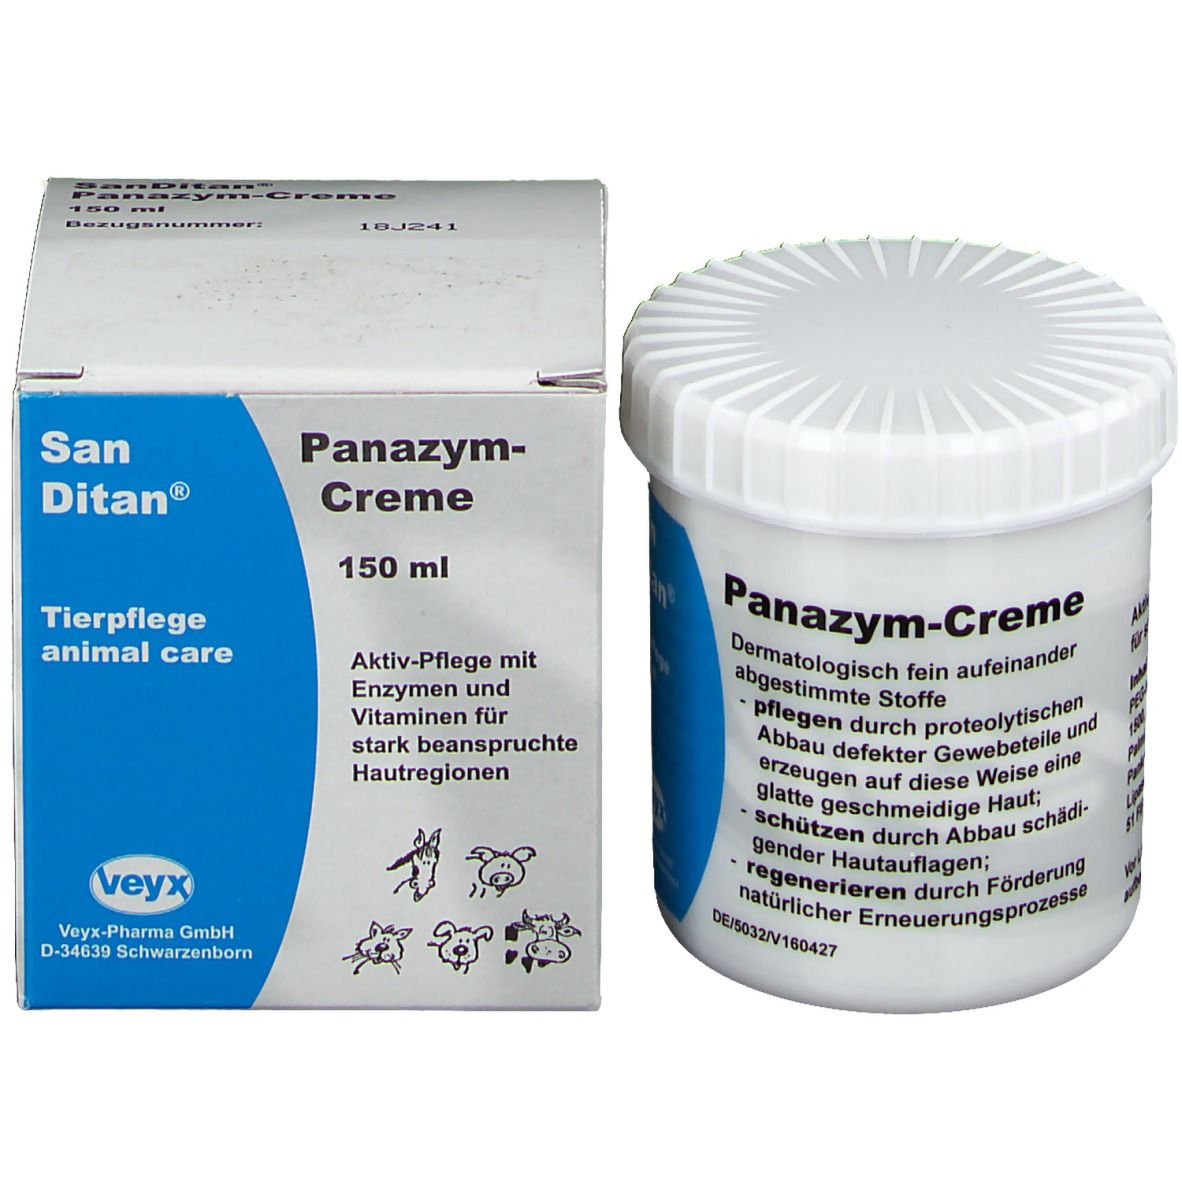 San Ditan® Panazym-Creme für Tiere